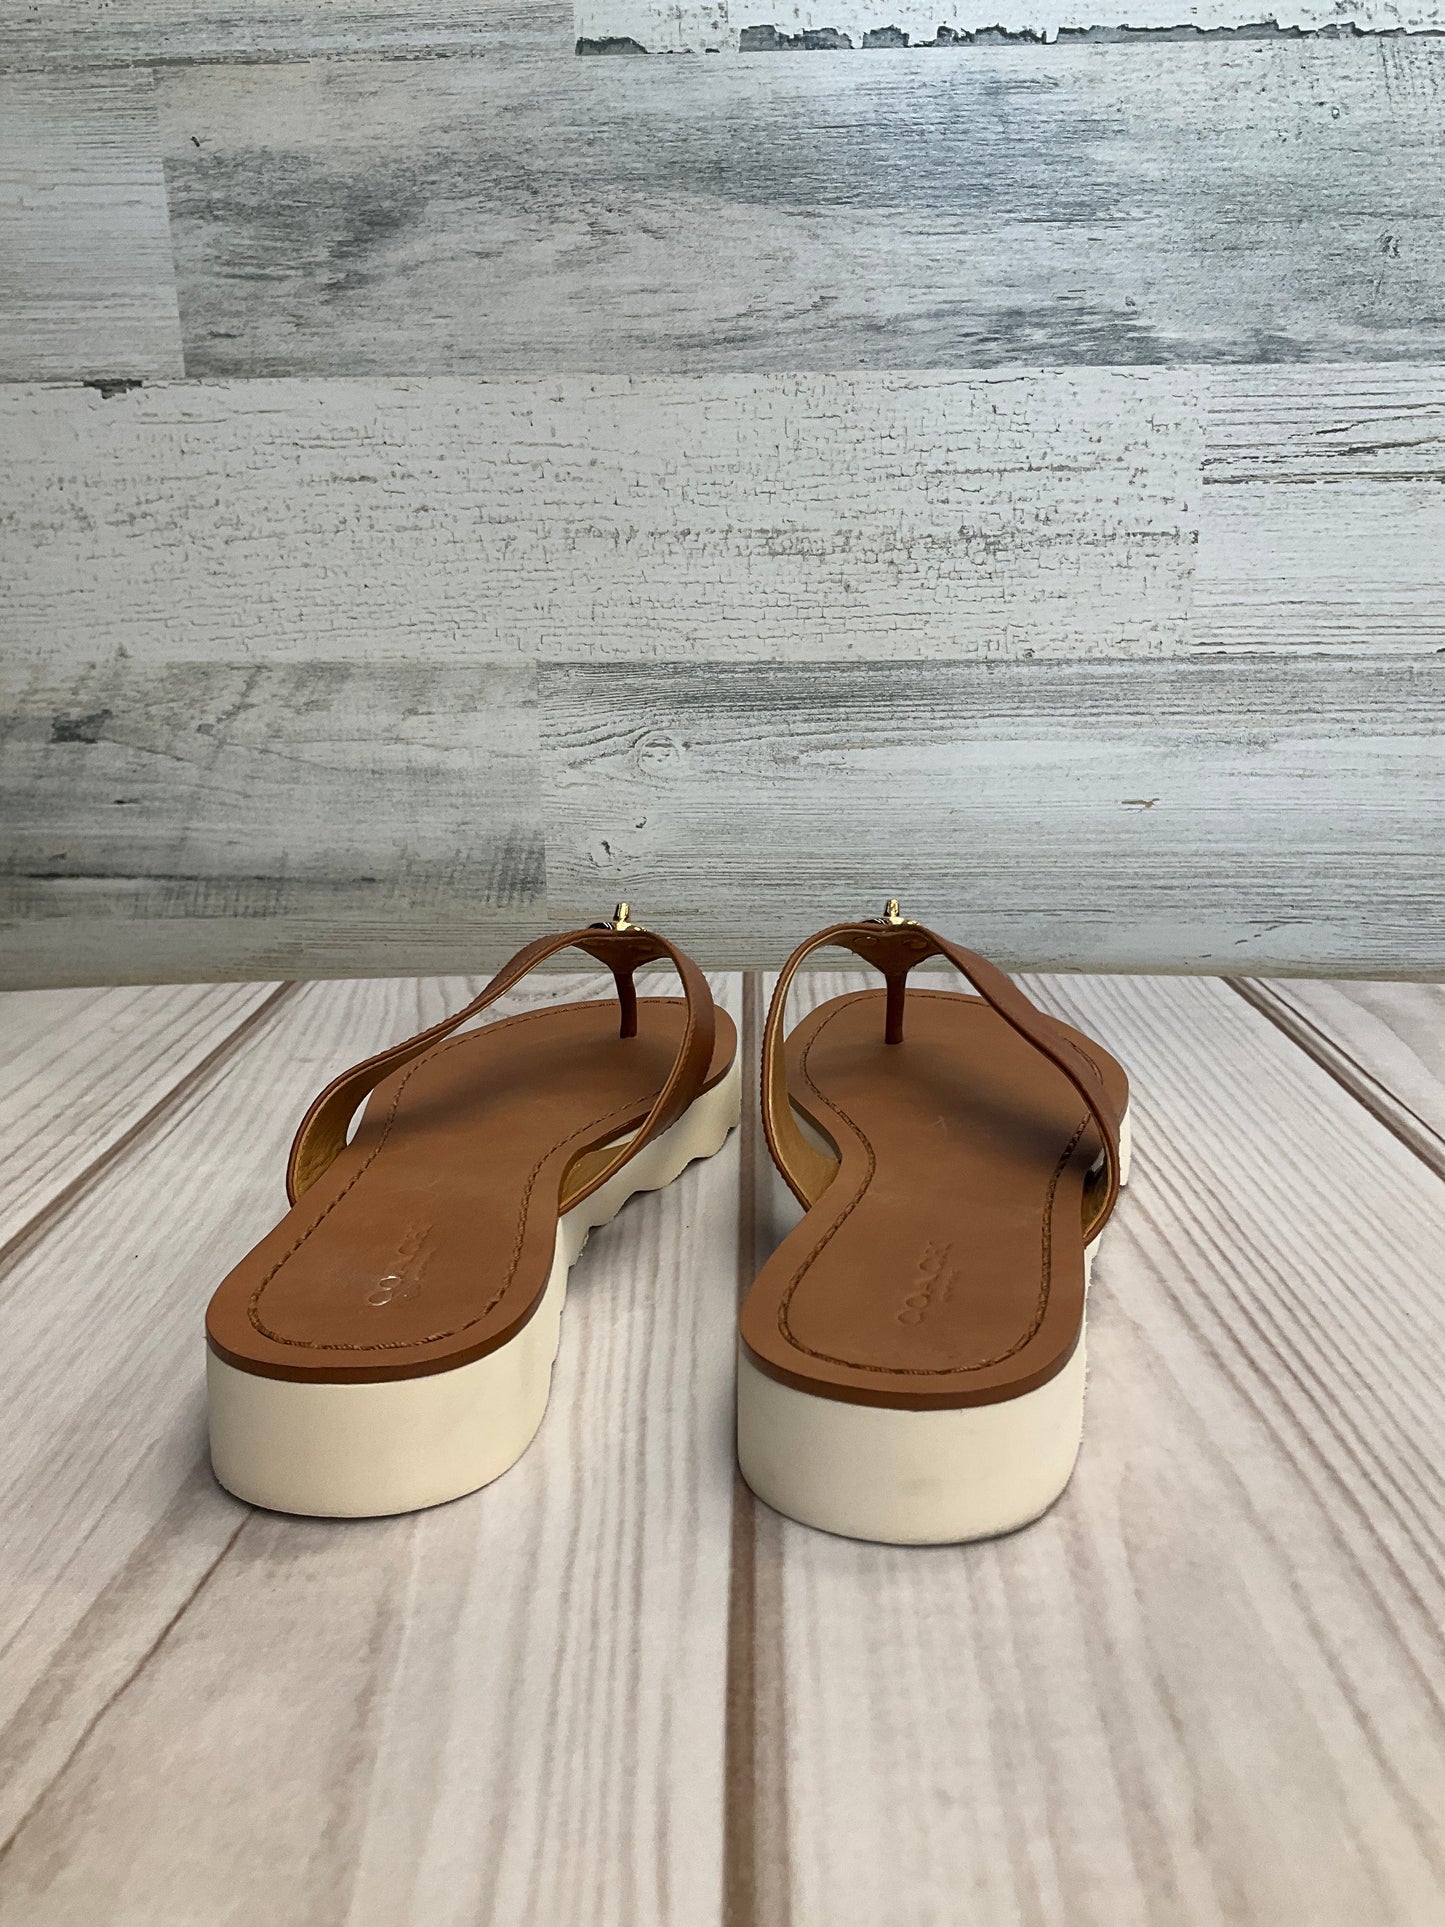 Sandals Flip Flops By Coach  Size: 6